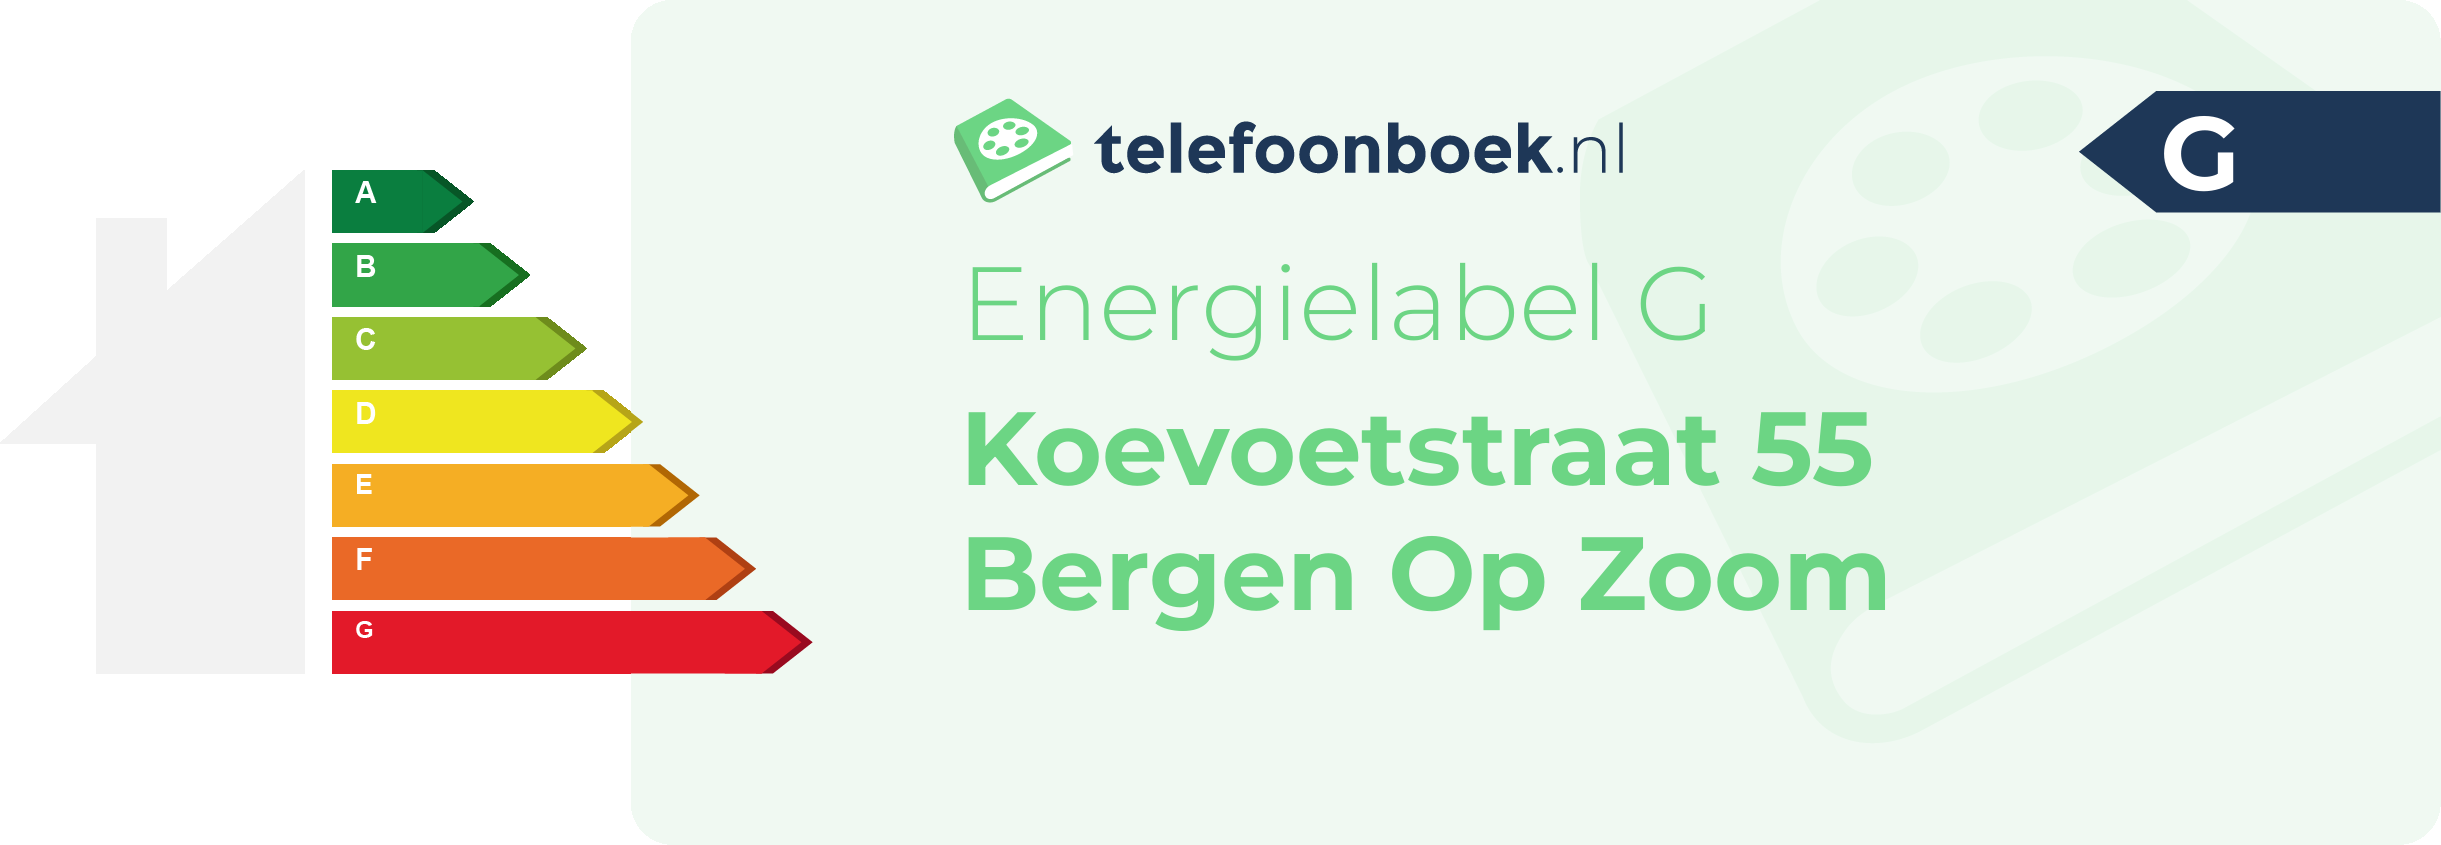 Energielabel Koevoetstraat 55 Bergen Op Zoom